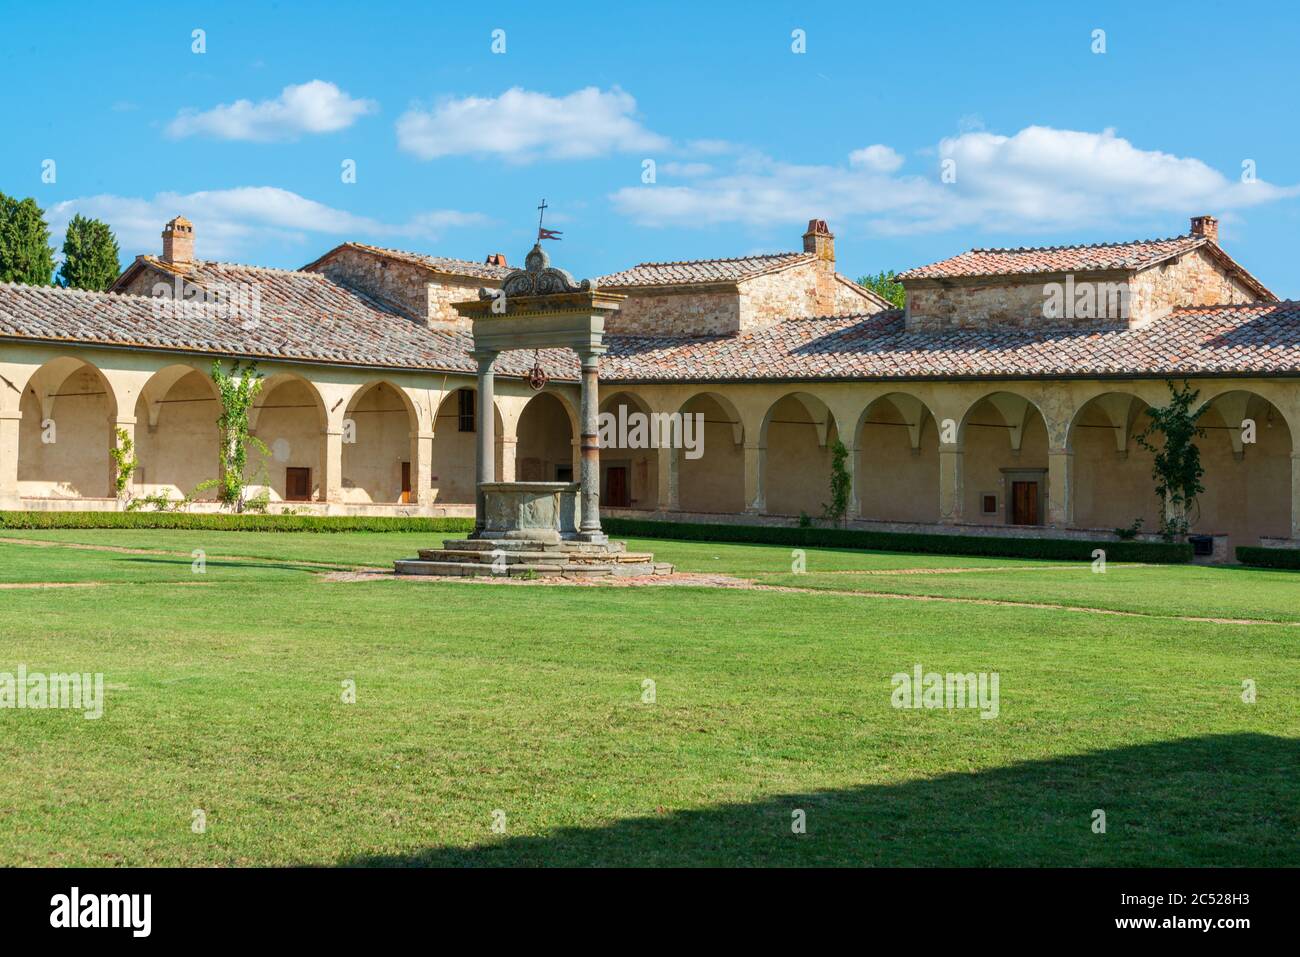 Auf einem Hügel nahe Siena befindet sich die Certosa di Pontignano, ein ehemaliges Kloster, heute als Gästehaus der Universität Siena. Stockfoto